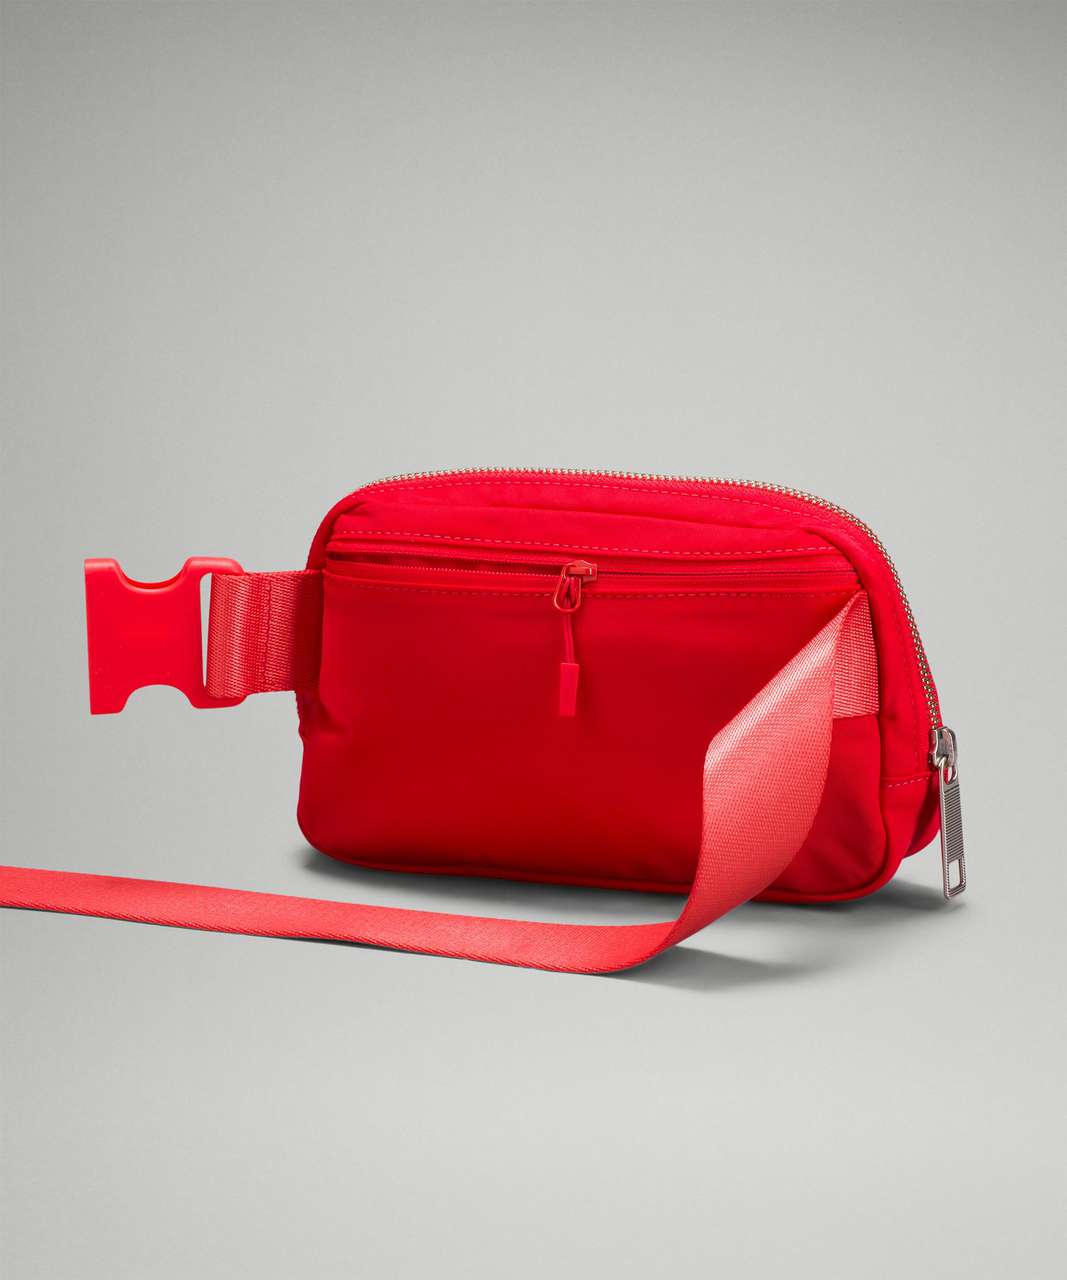 Lululemon Everywhere Belt Bag OG Love Red - Women's handbags